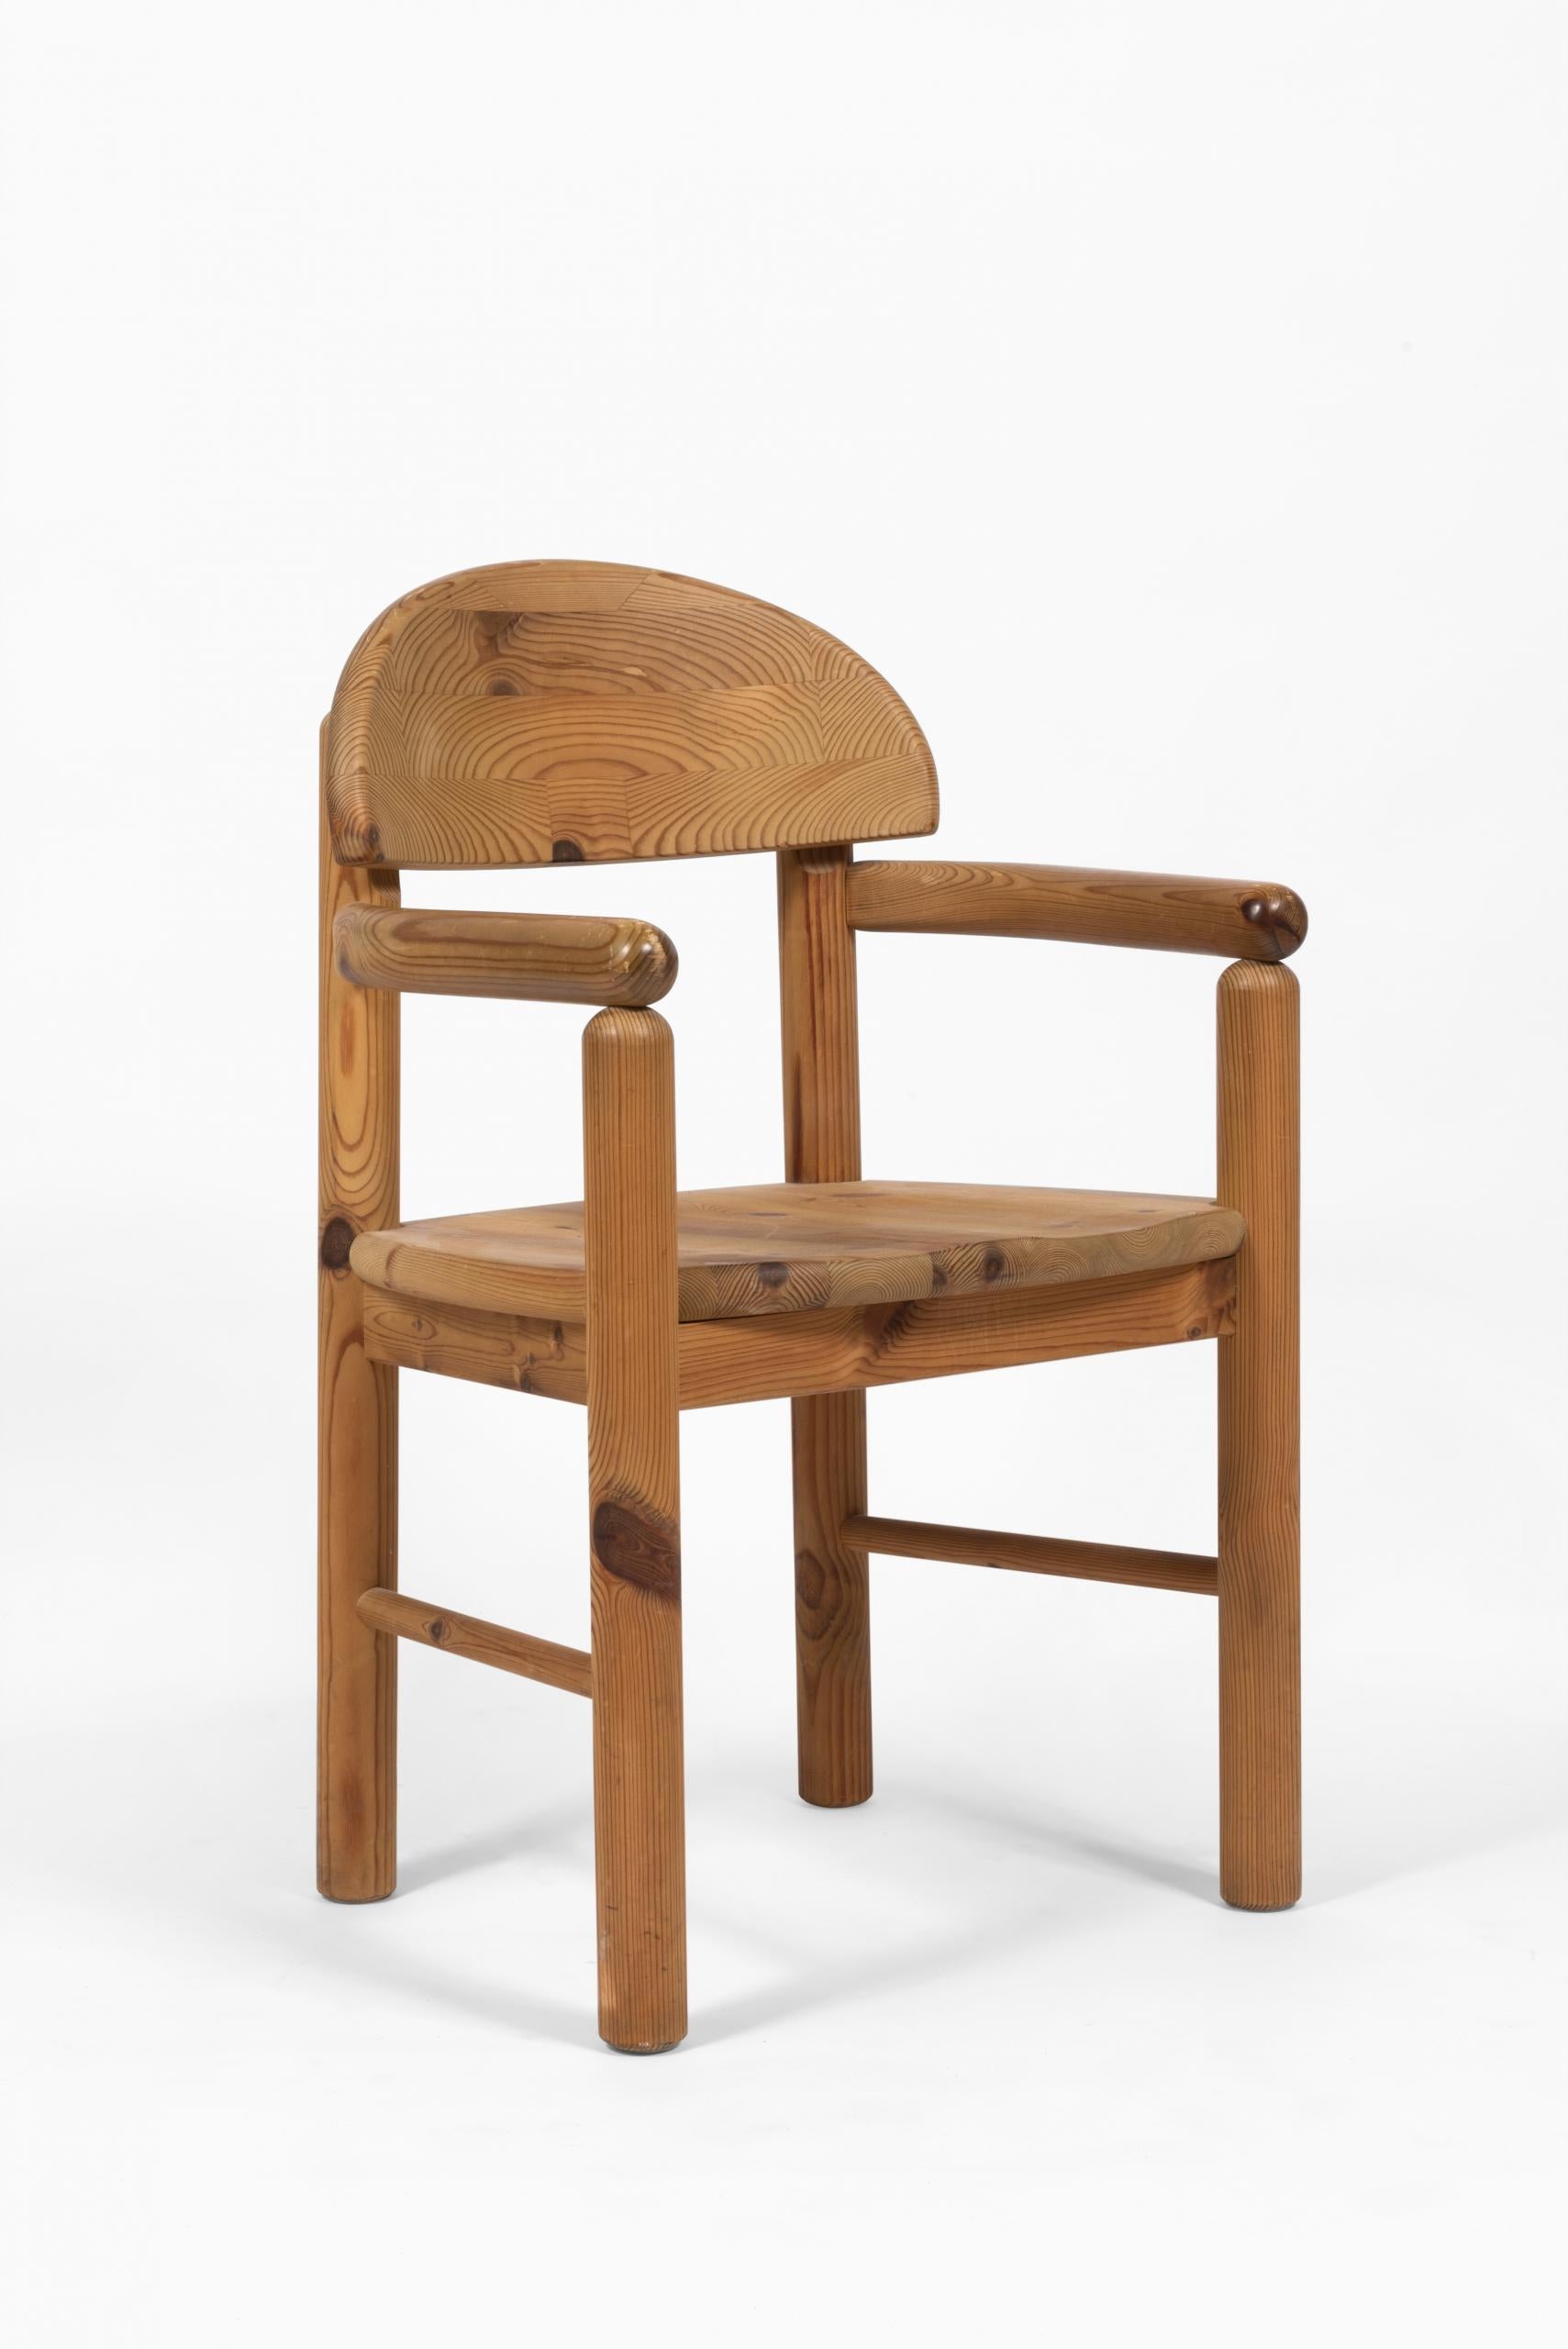 Ensemble de 6 chaises en pin poli dans le goût de Rainer Daumiller, style mobilier brutaliste.

Modèle produit par Hirtshals Savvaerk Mobler Denmark (scierie Hirtshals). Fabrice selon la qualité et le design scandinave.

4 chaises + 2 chaises